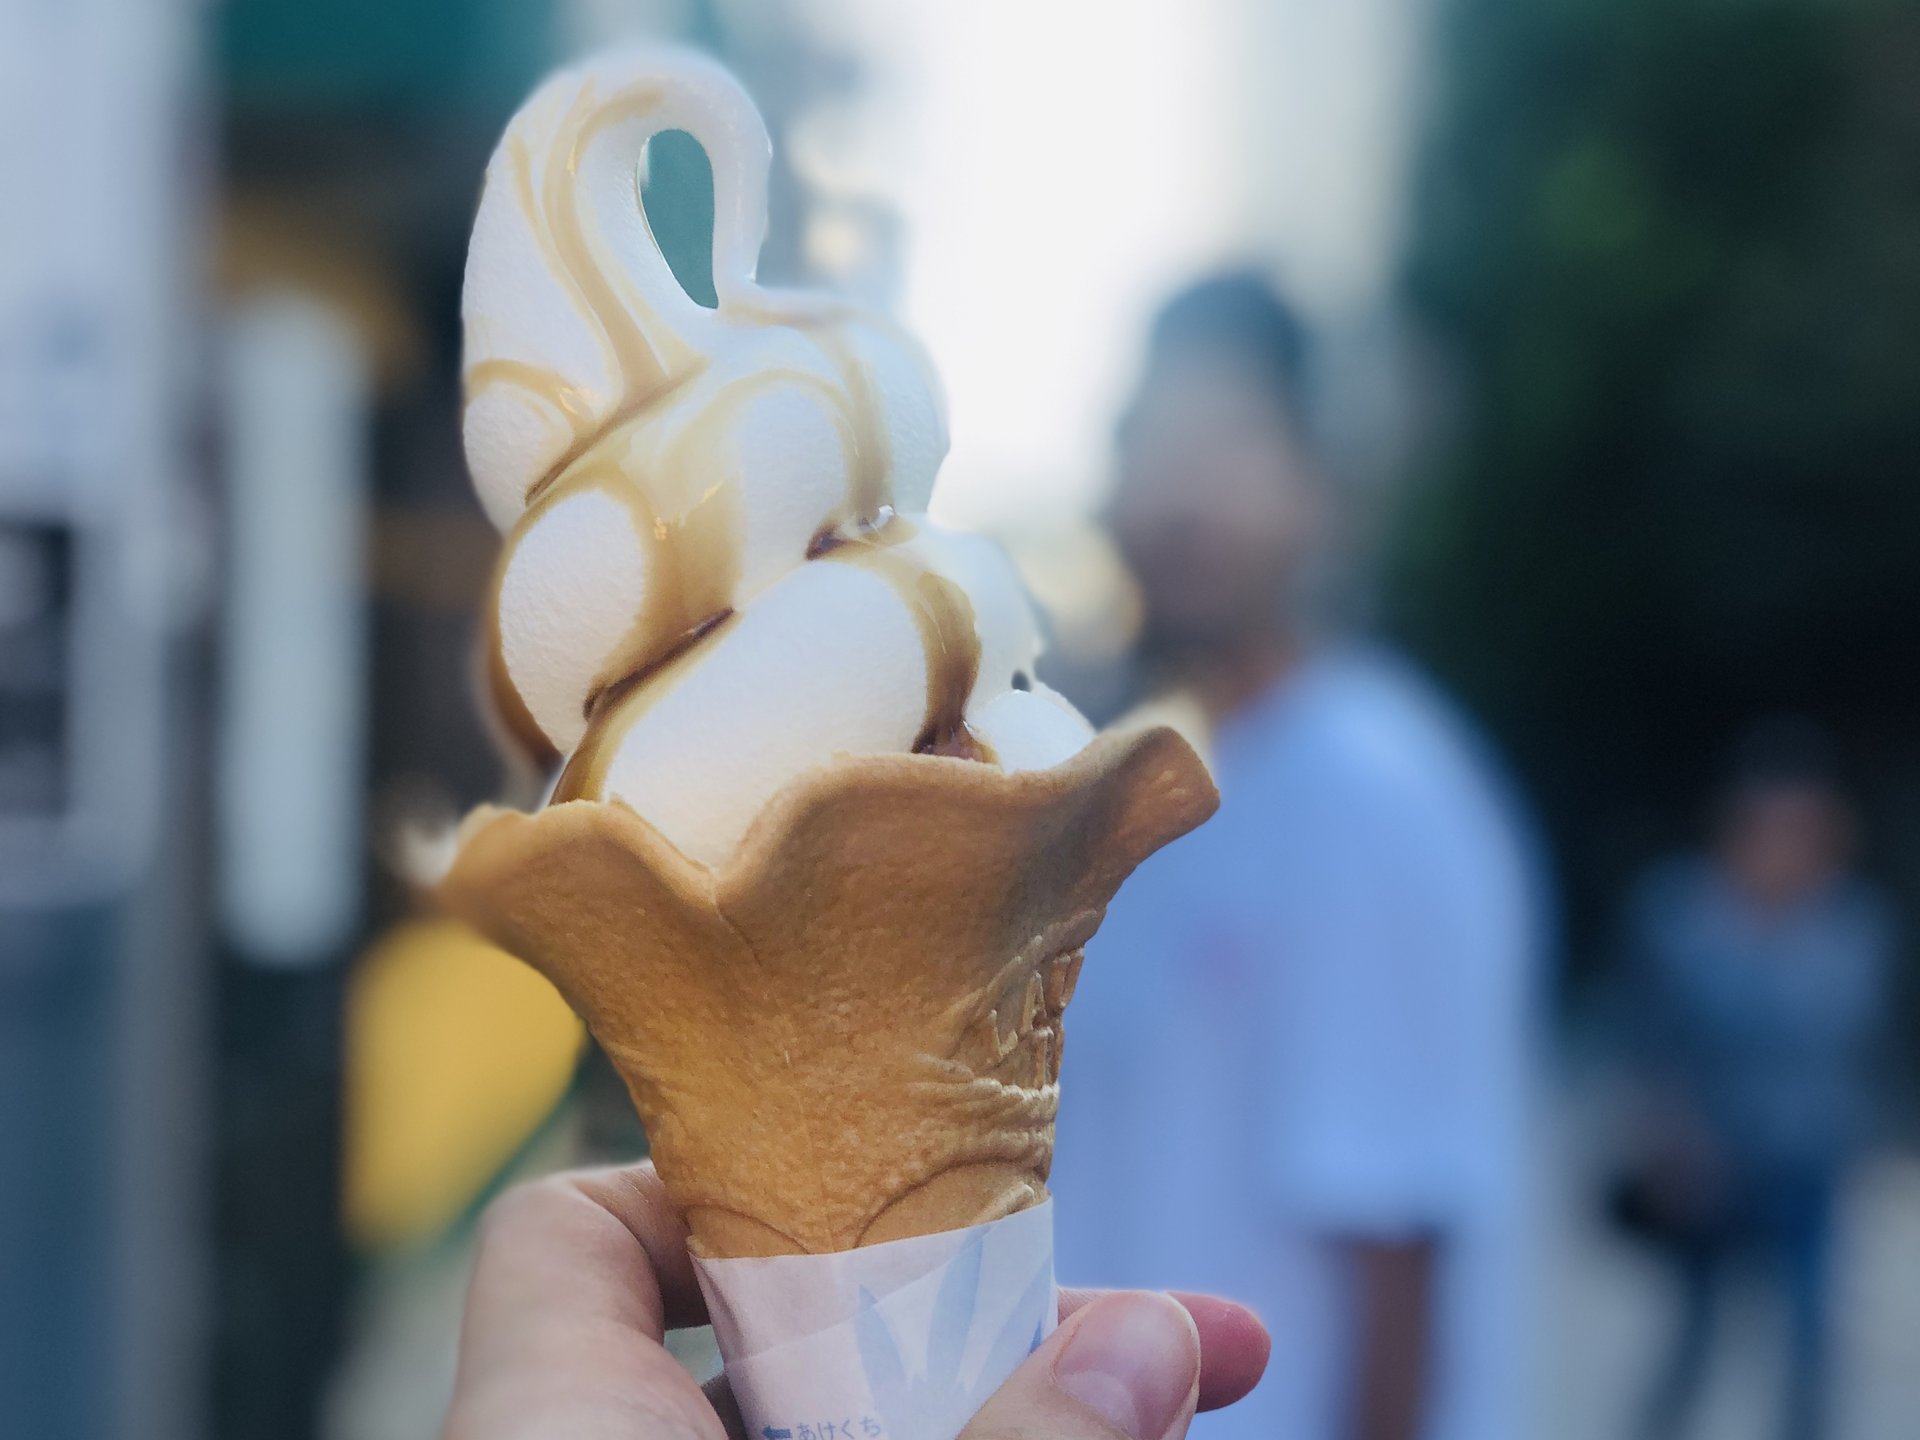 江ノ島の新名物のプリンソフトクリームを食べてみた♡快晴の江ノ島を心行くまで堪能しよう。